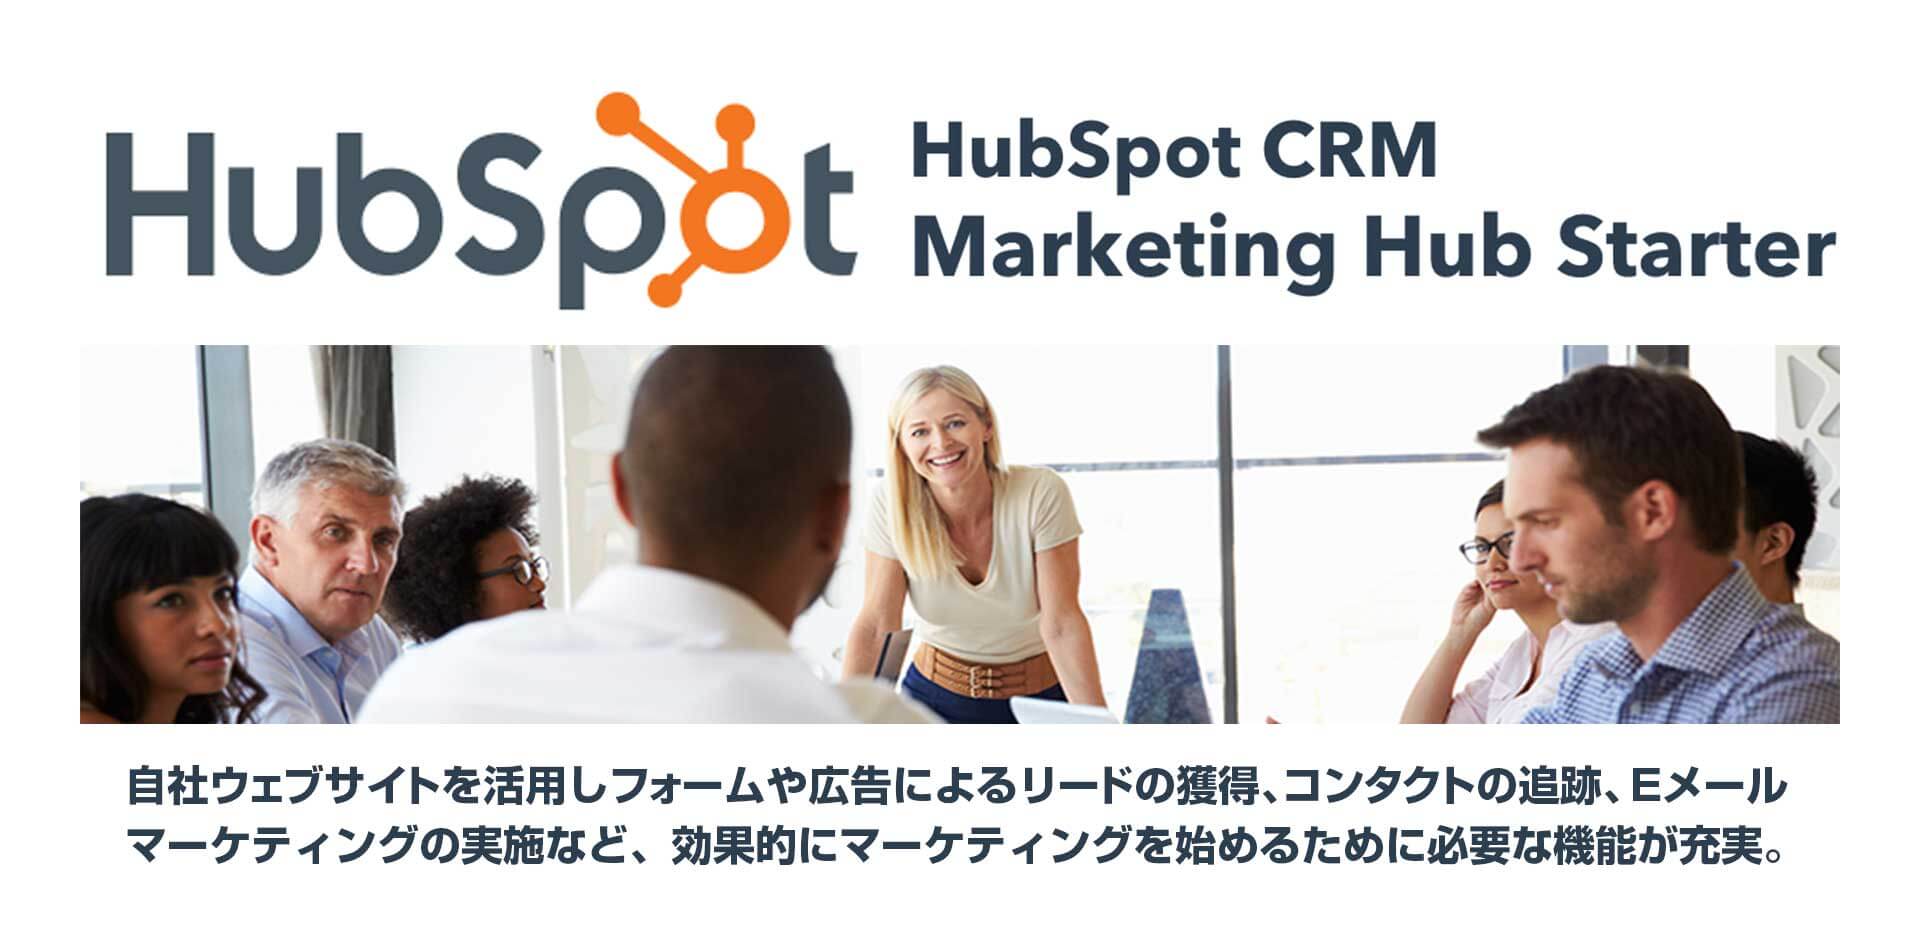 Hubspot CRM & Marketing Hub starter